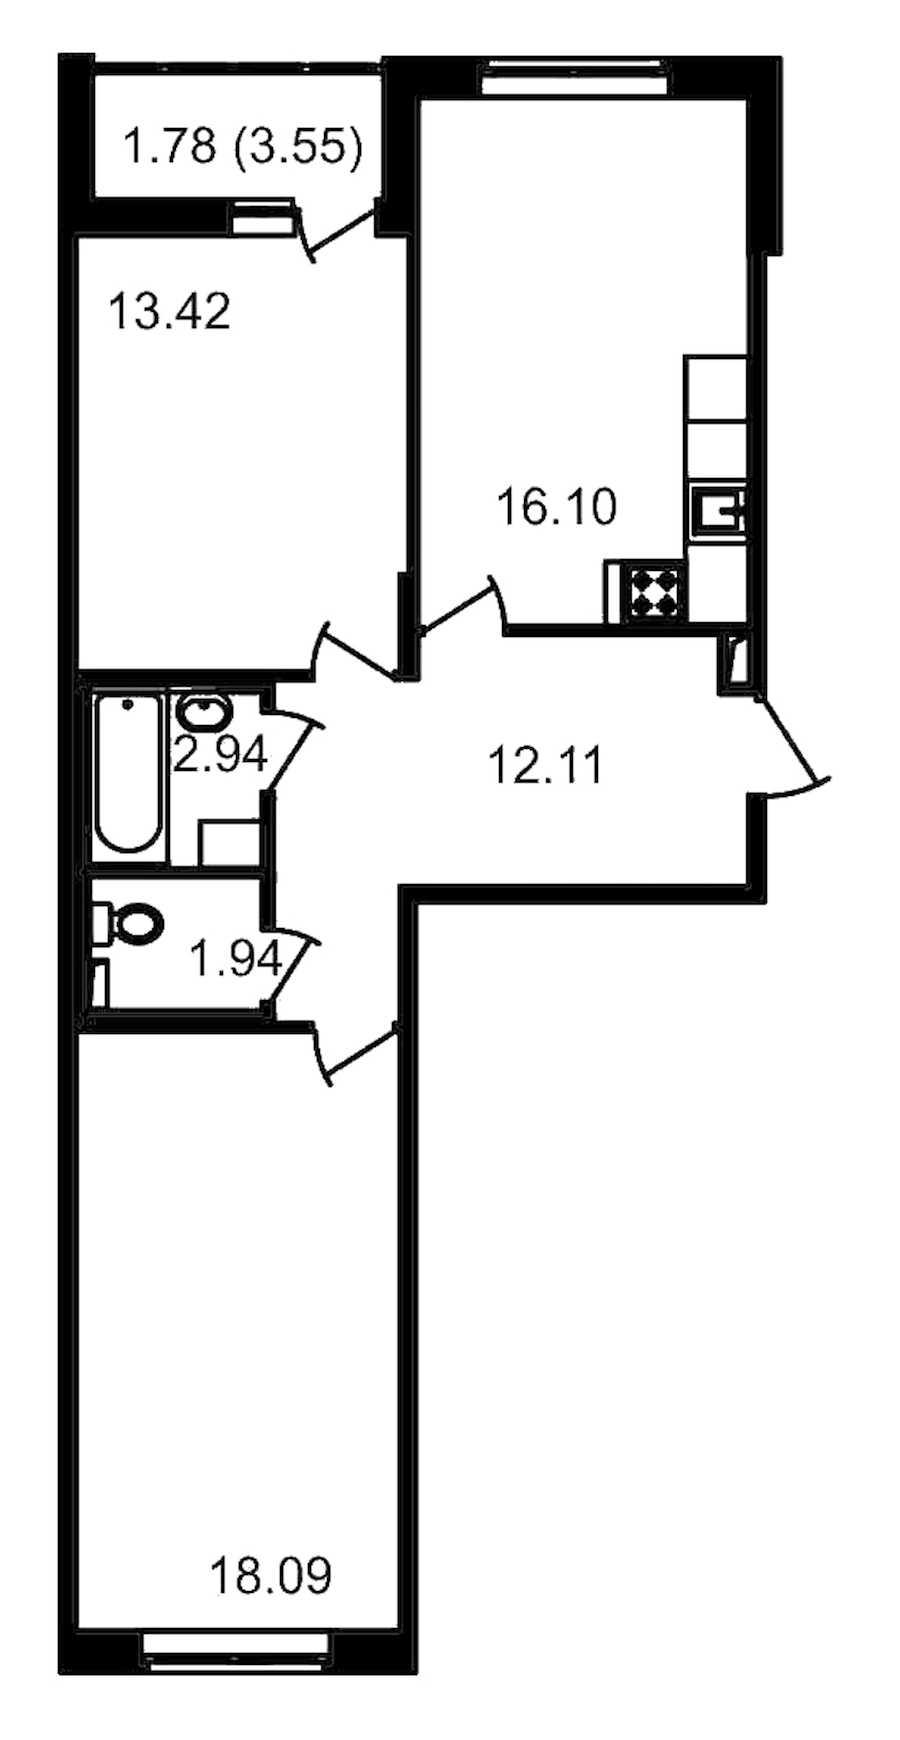 Двухкомнатная квартира в : площадь 68.15 м2 , этаж: 11 – купить в Санкт-Петербурге